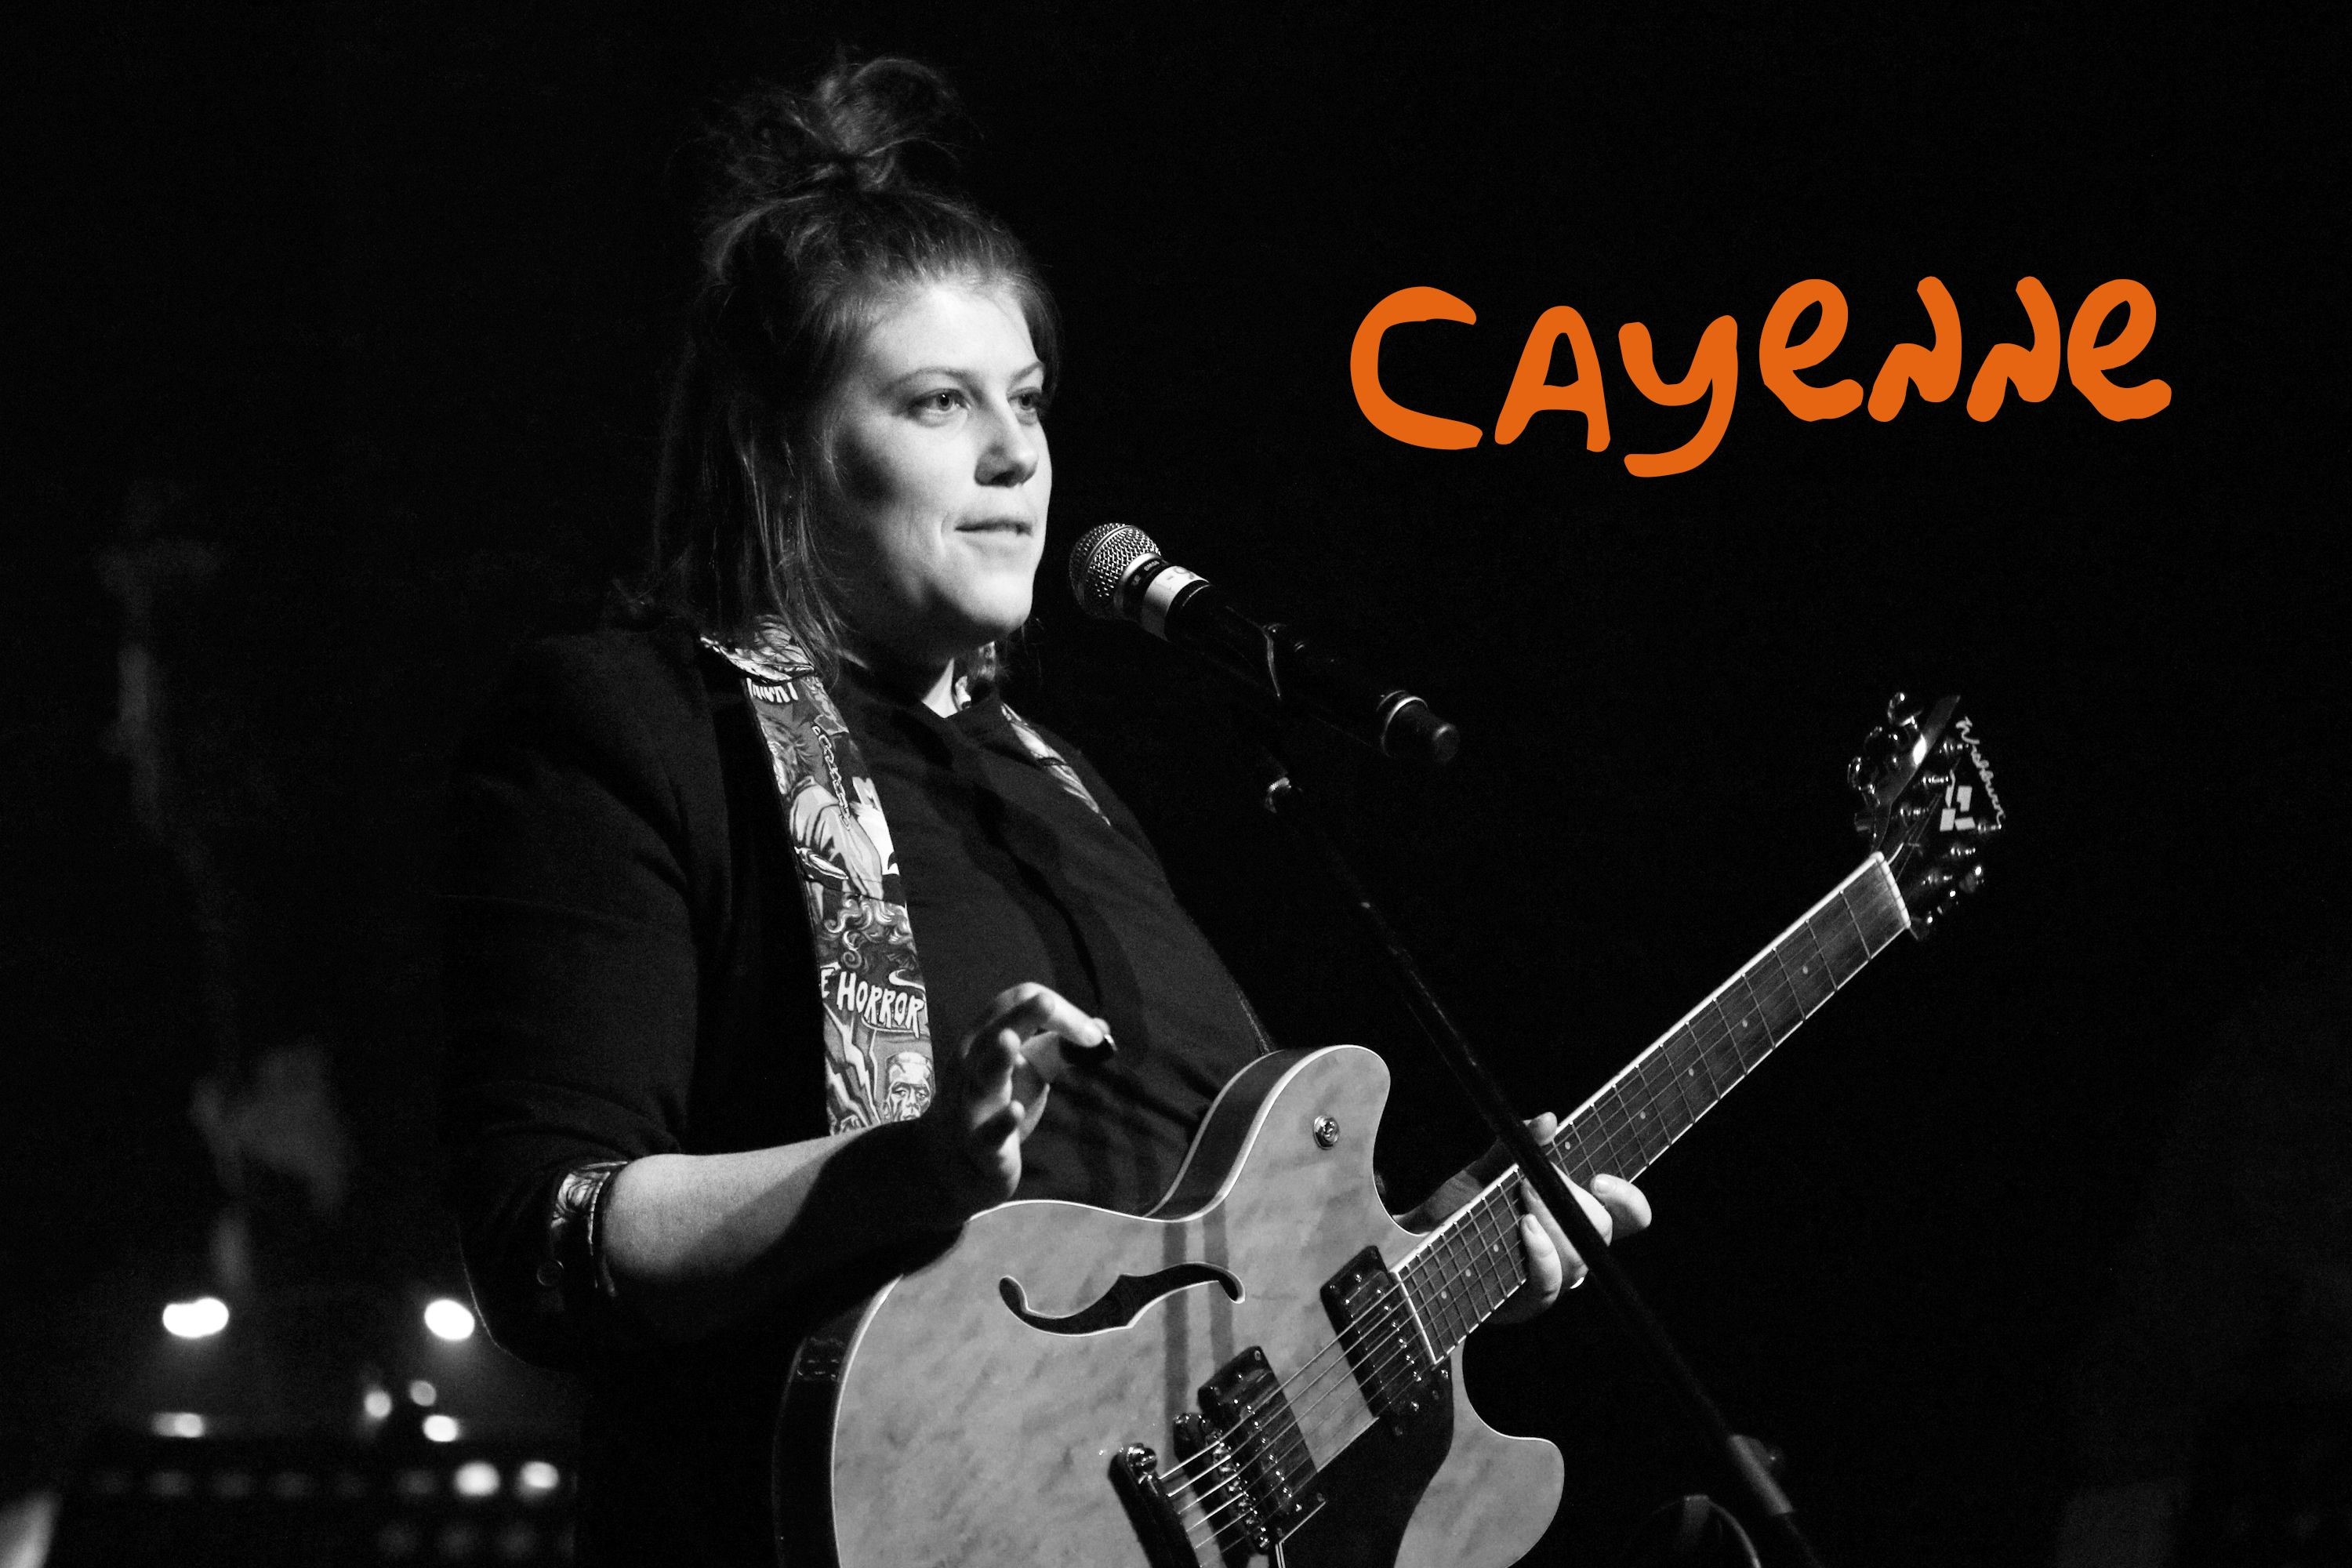 Cayenne wins the Artisti award at the 52nd edition of the Festival international de la chanson de Granby